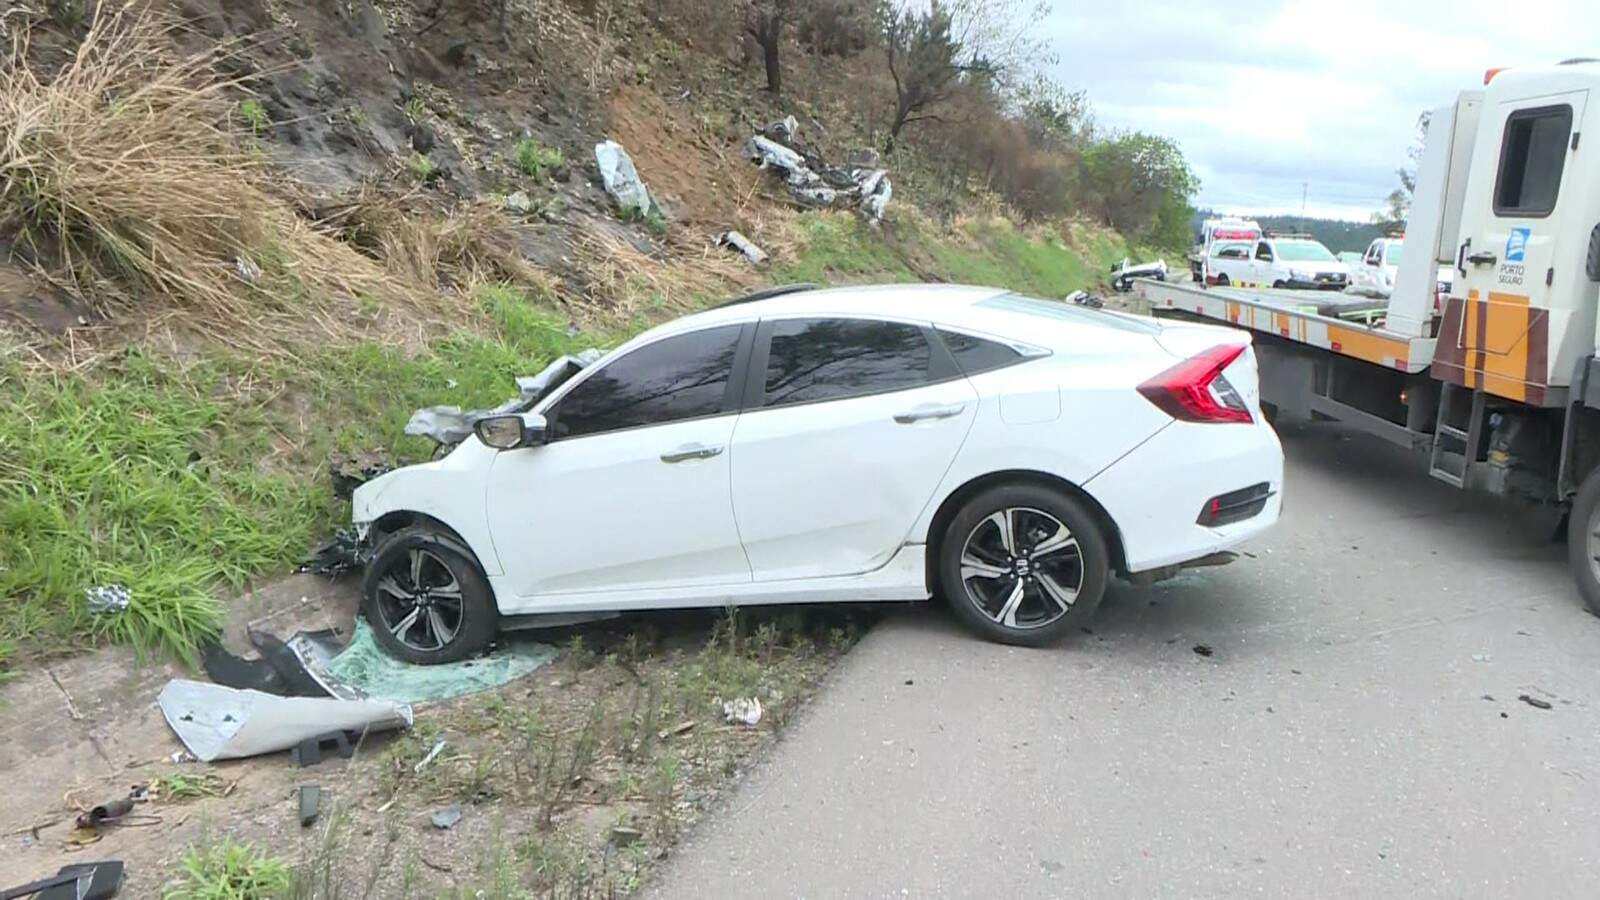 Segundo testemunhas, um carro do modelo Mitsubishi Lancer estava em alta velocidade quando perdeu o controle 